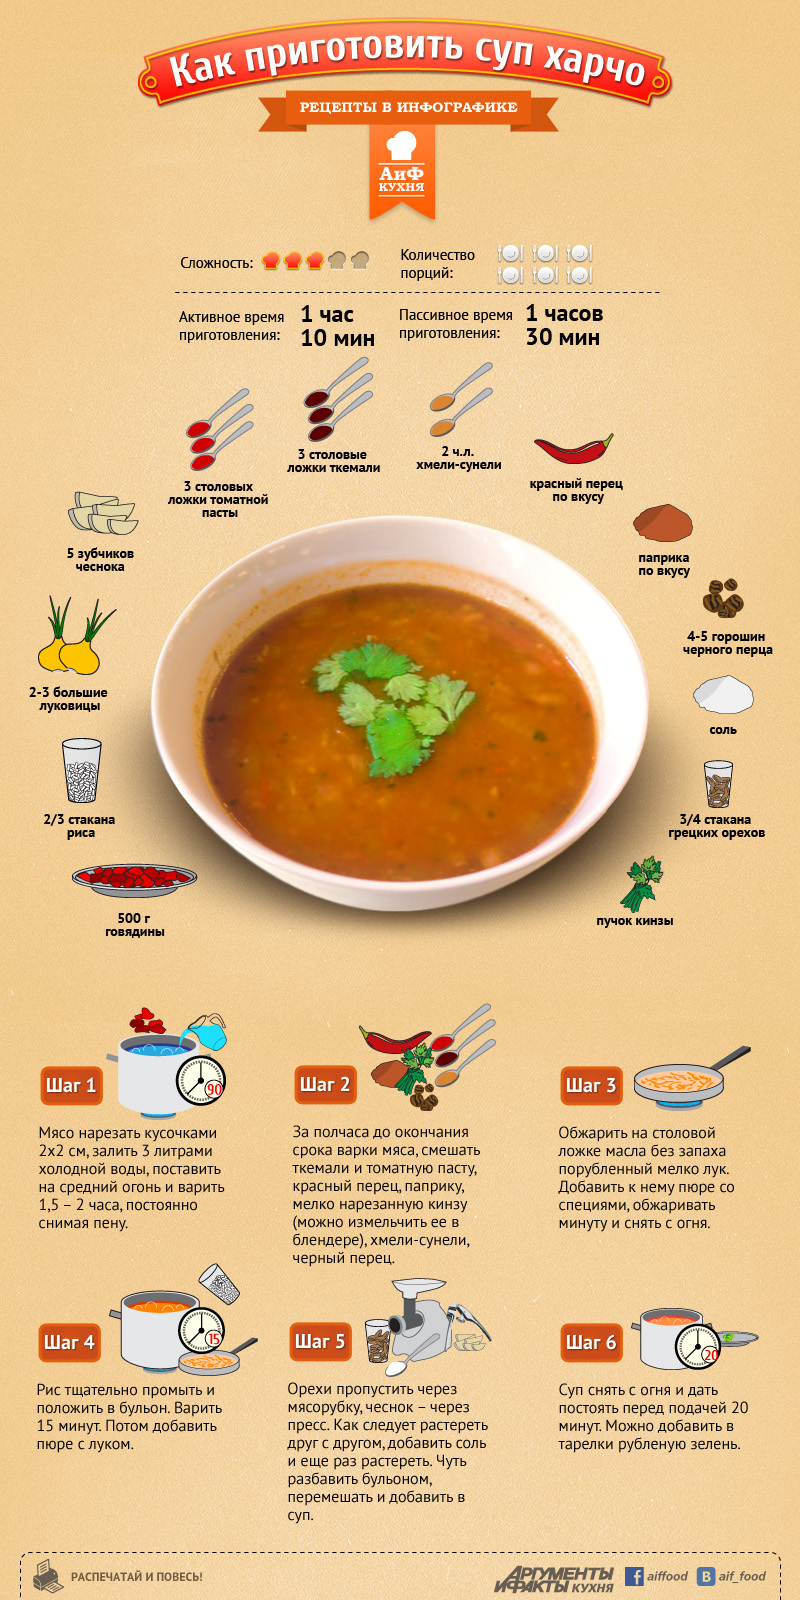 Первые блюда ( супы, щи, борщи и прочее ) Harcho